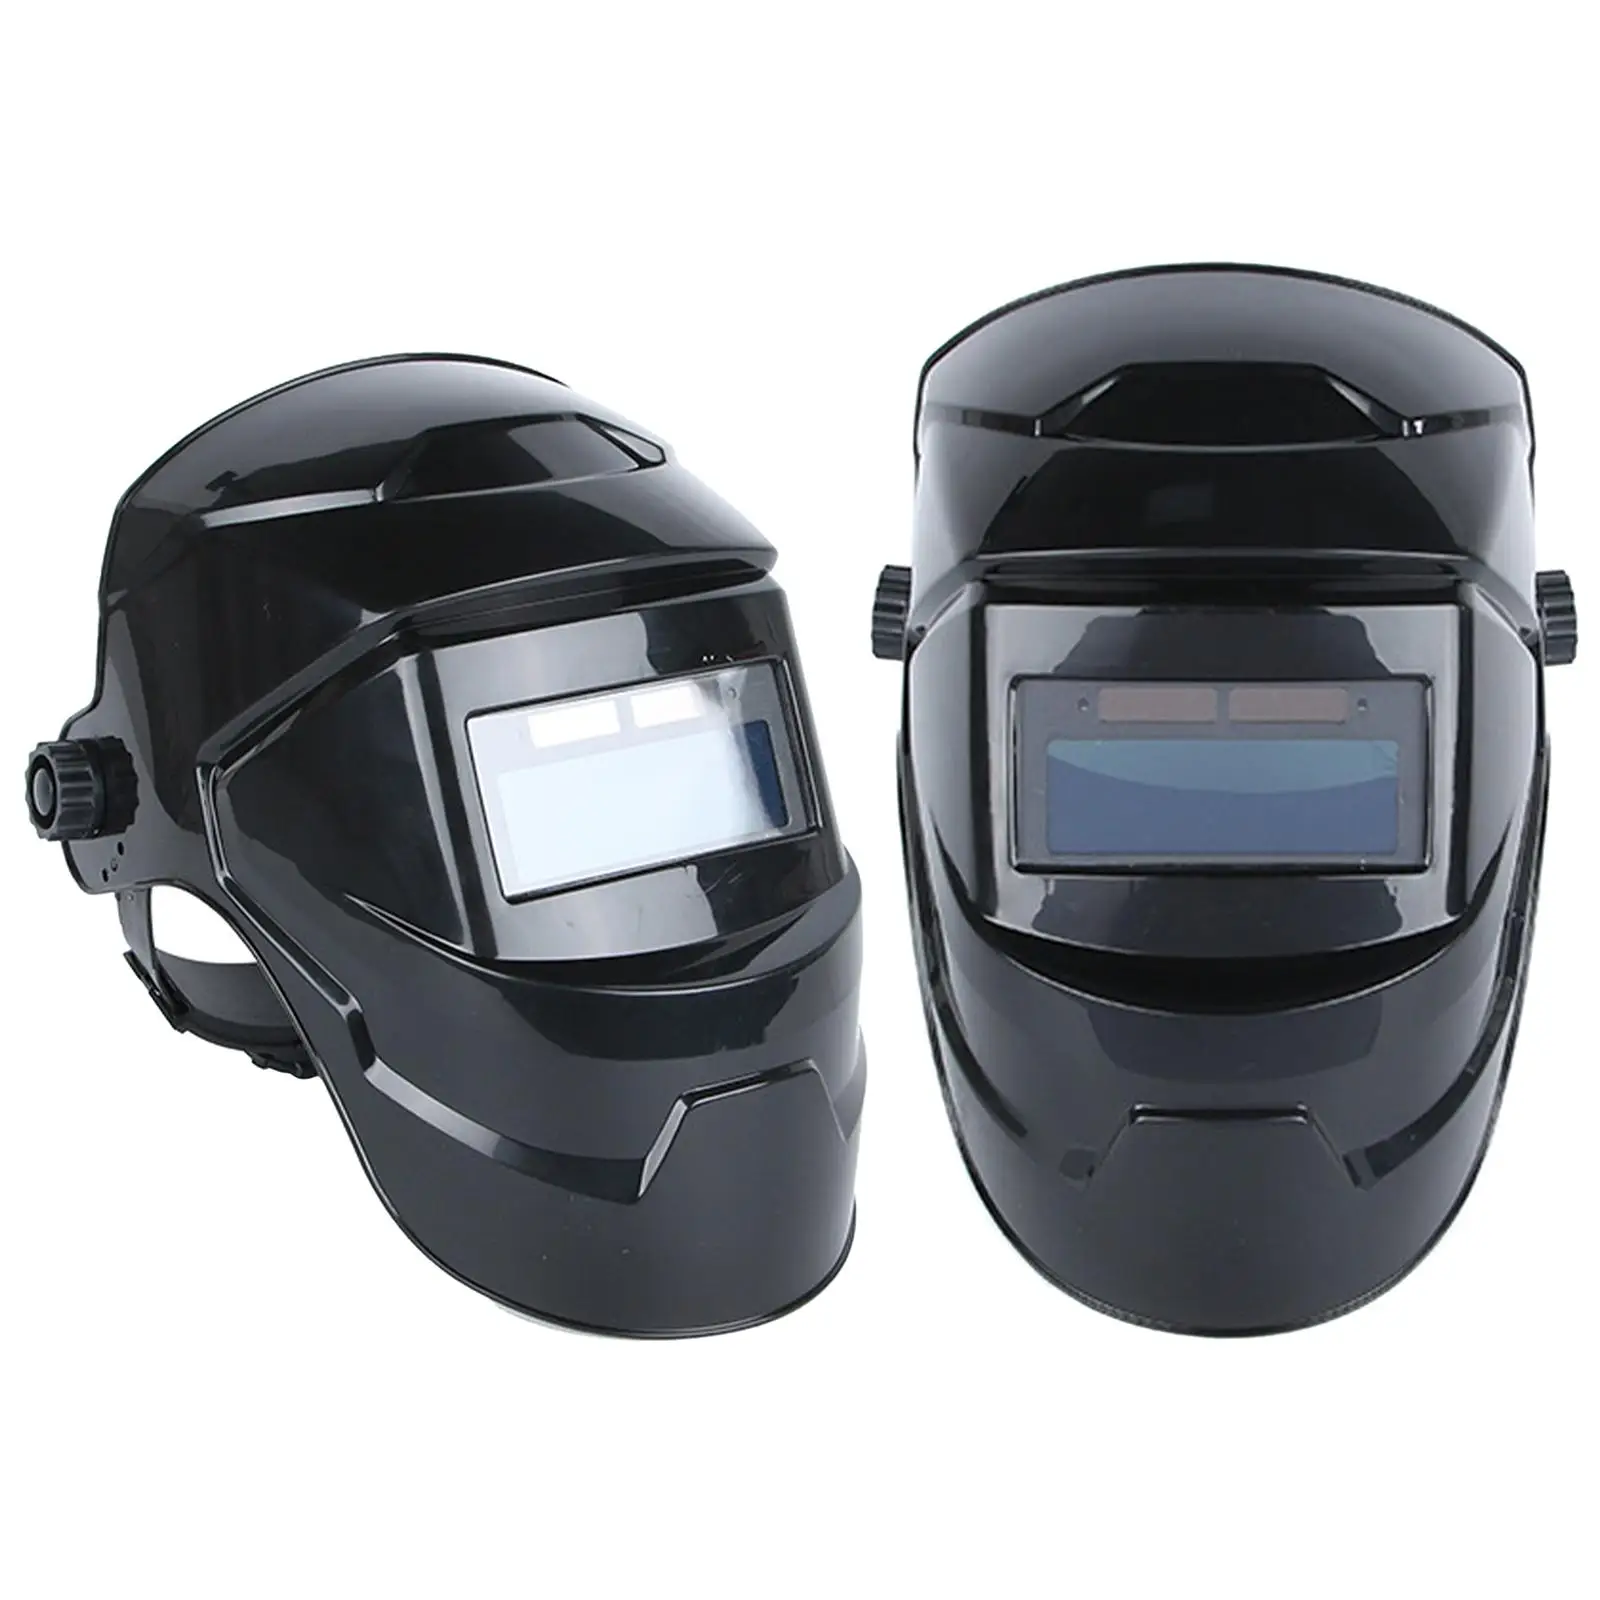 Auto Darkening Welding Helmet Head Mounted 180 Free Rotation Adjustable Welding Helmet Welder Mask for All Welding Applications